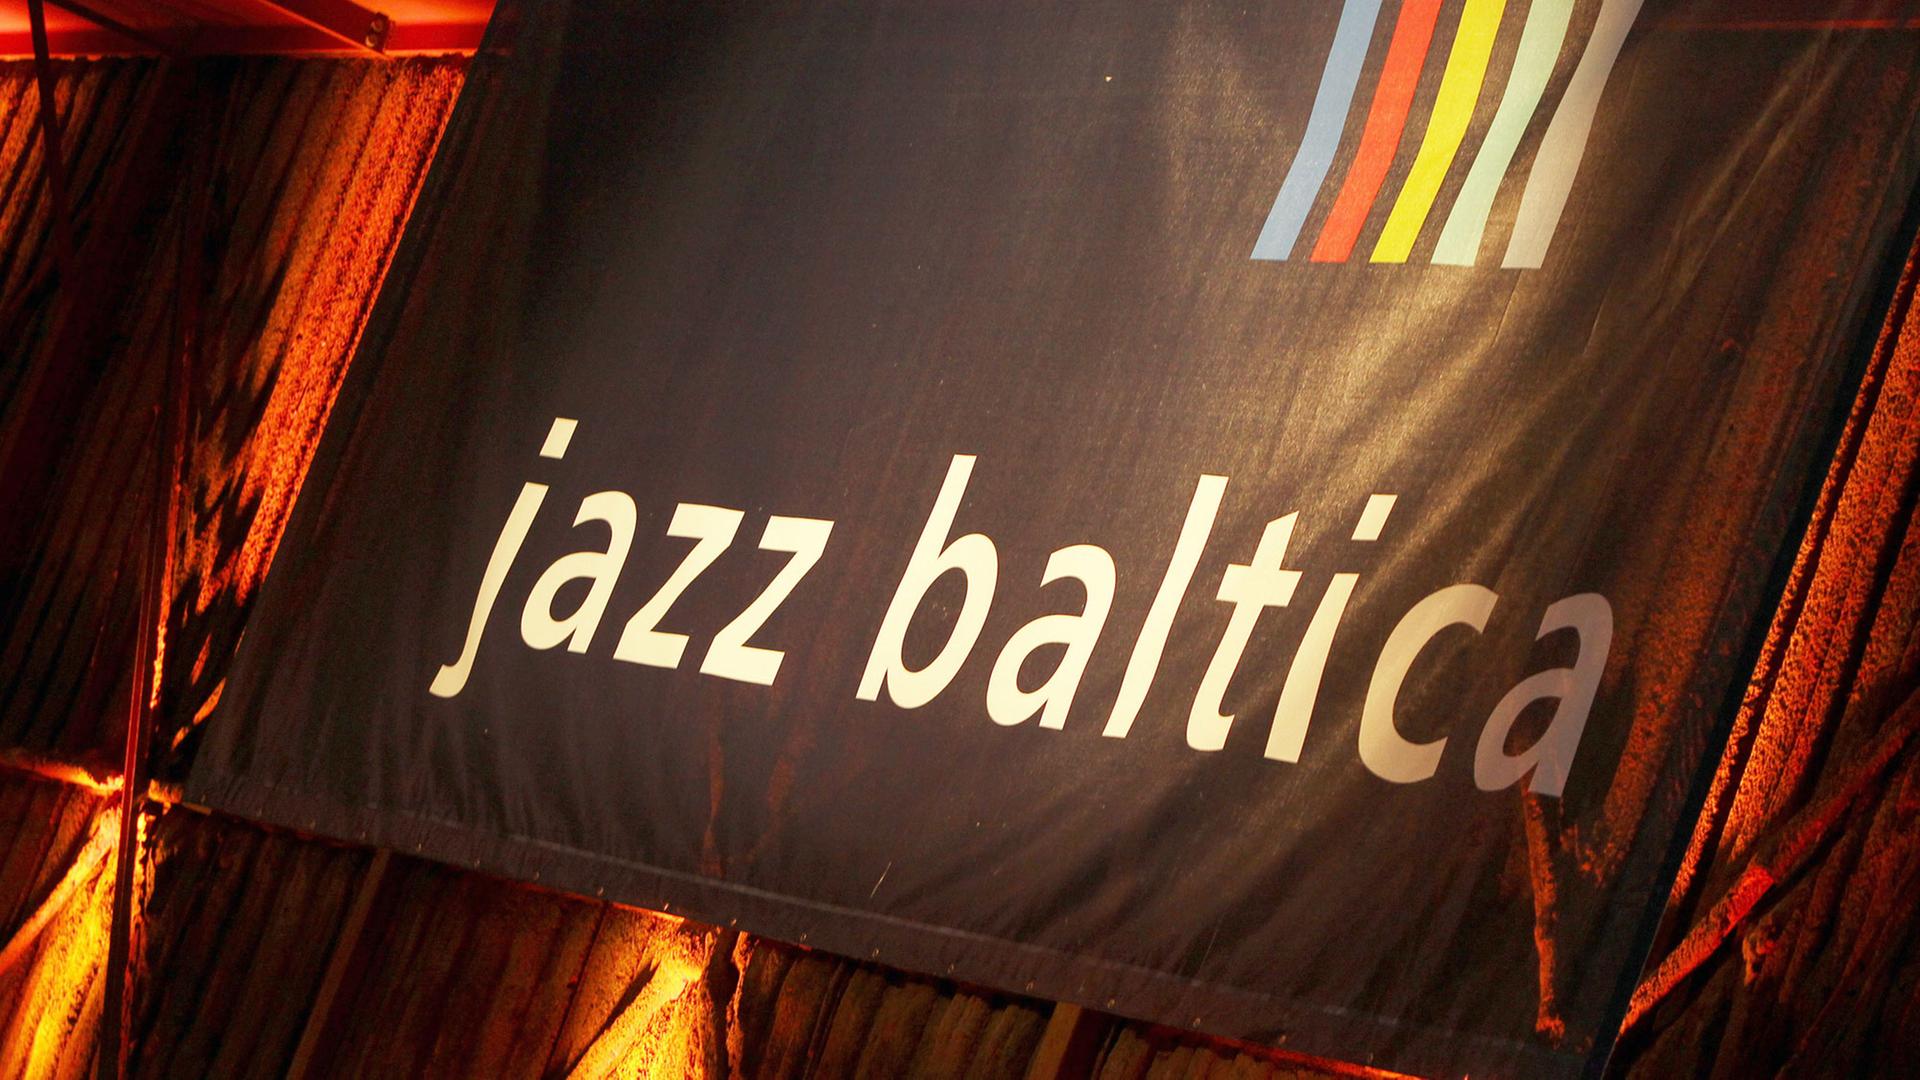 Ein Banner mit der Aufschrift "Jazzbaltica" 